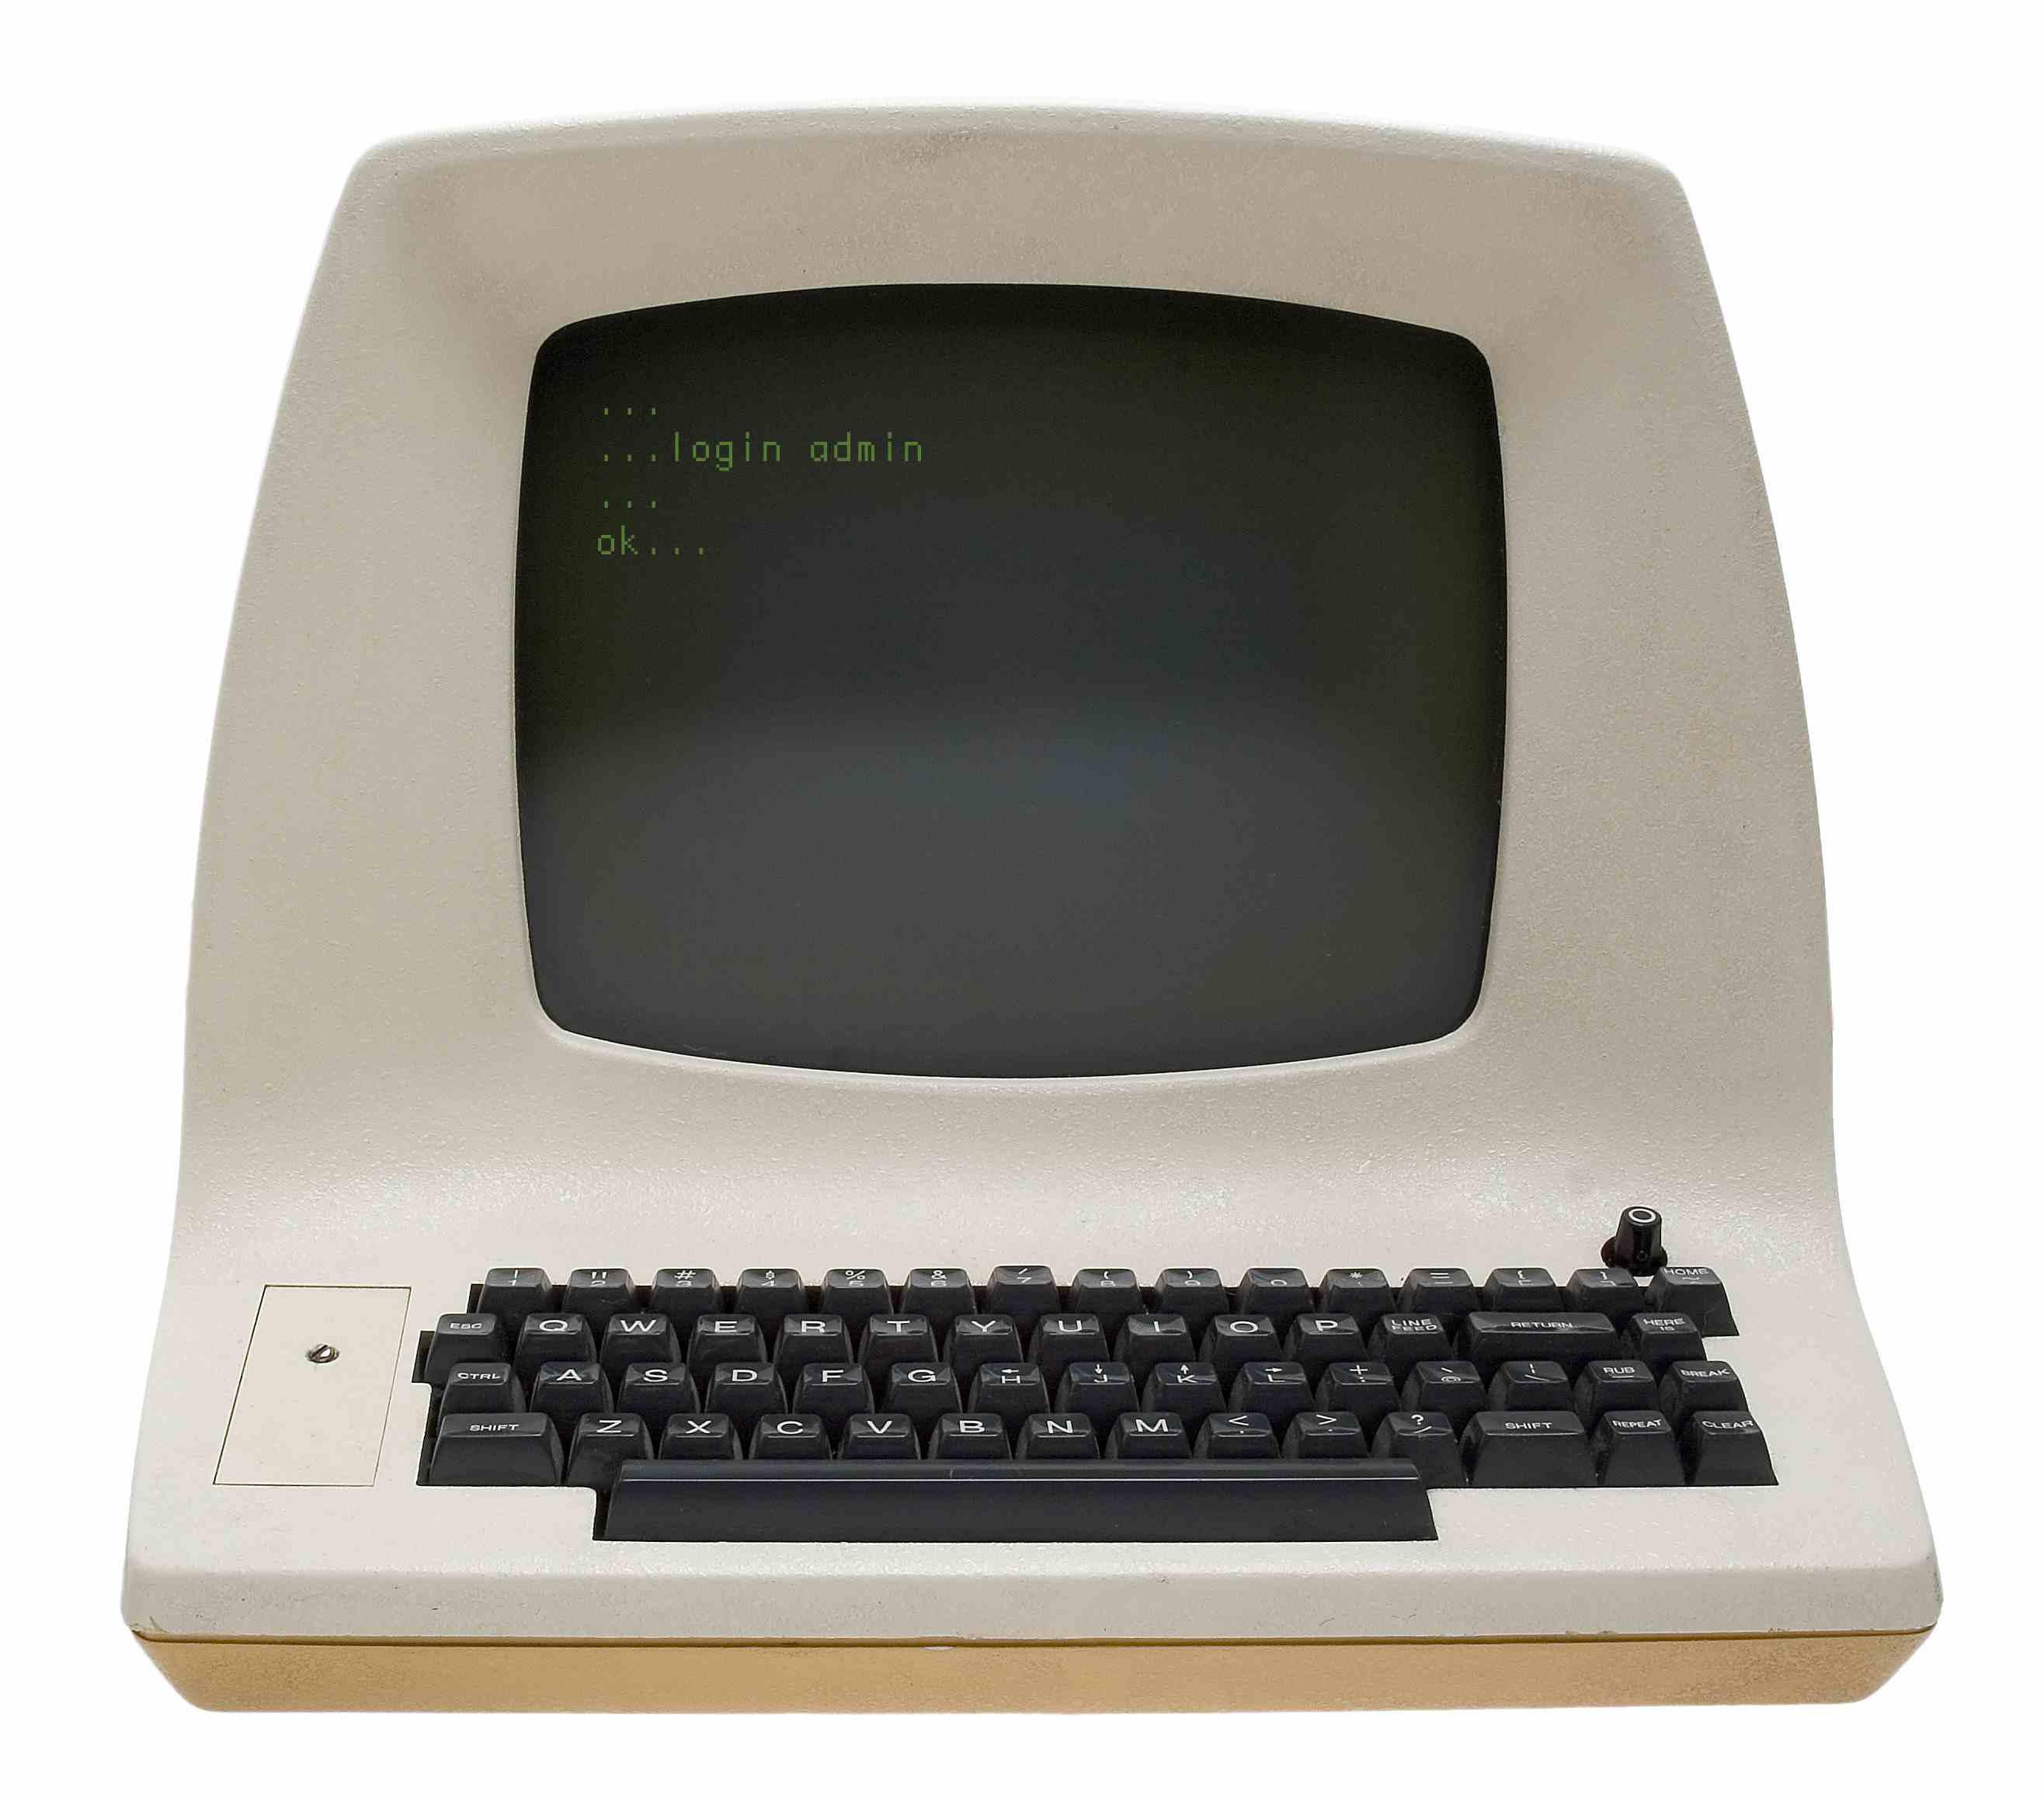 verander IBM Compter van 1981